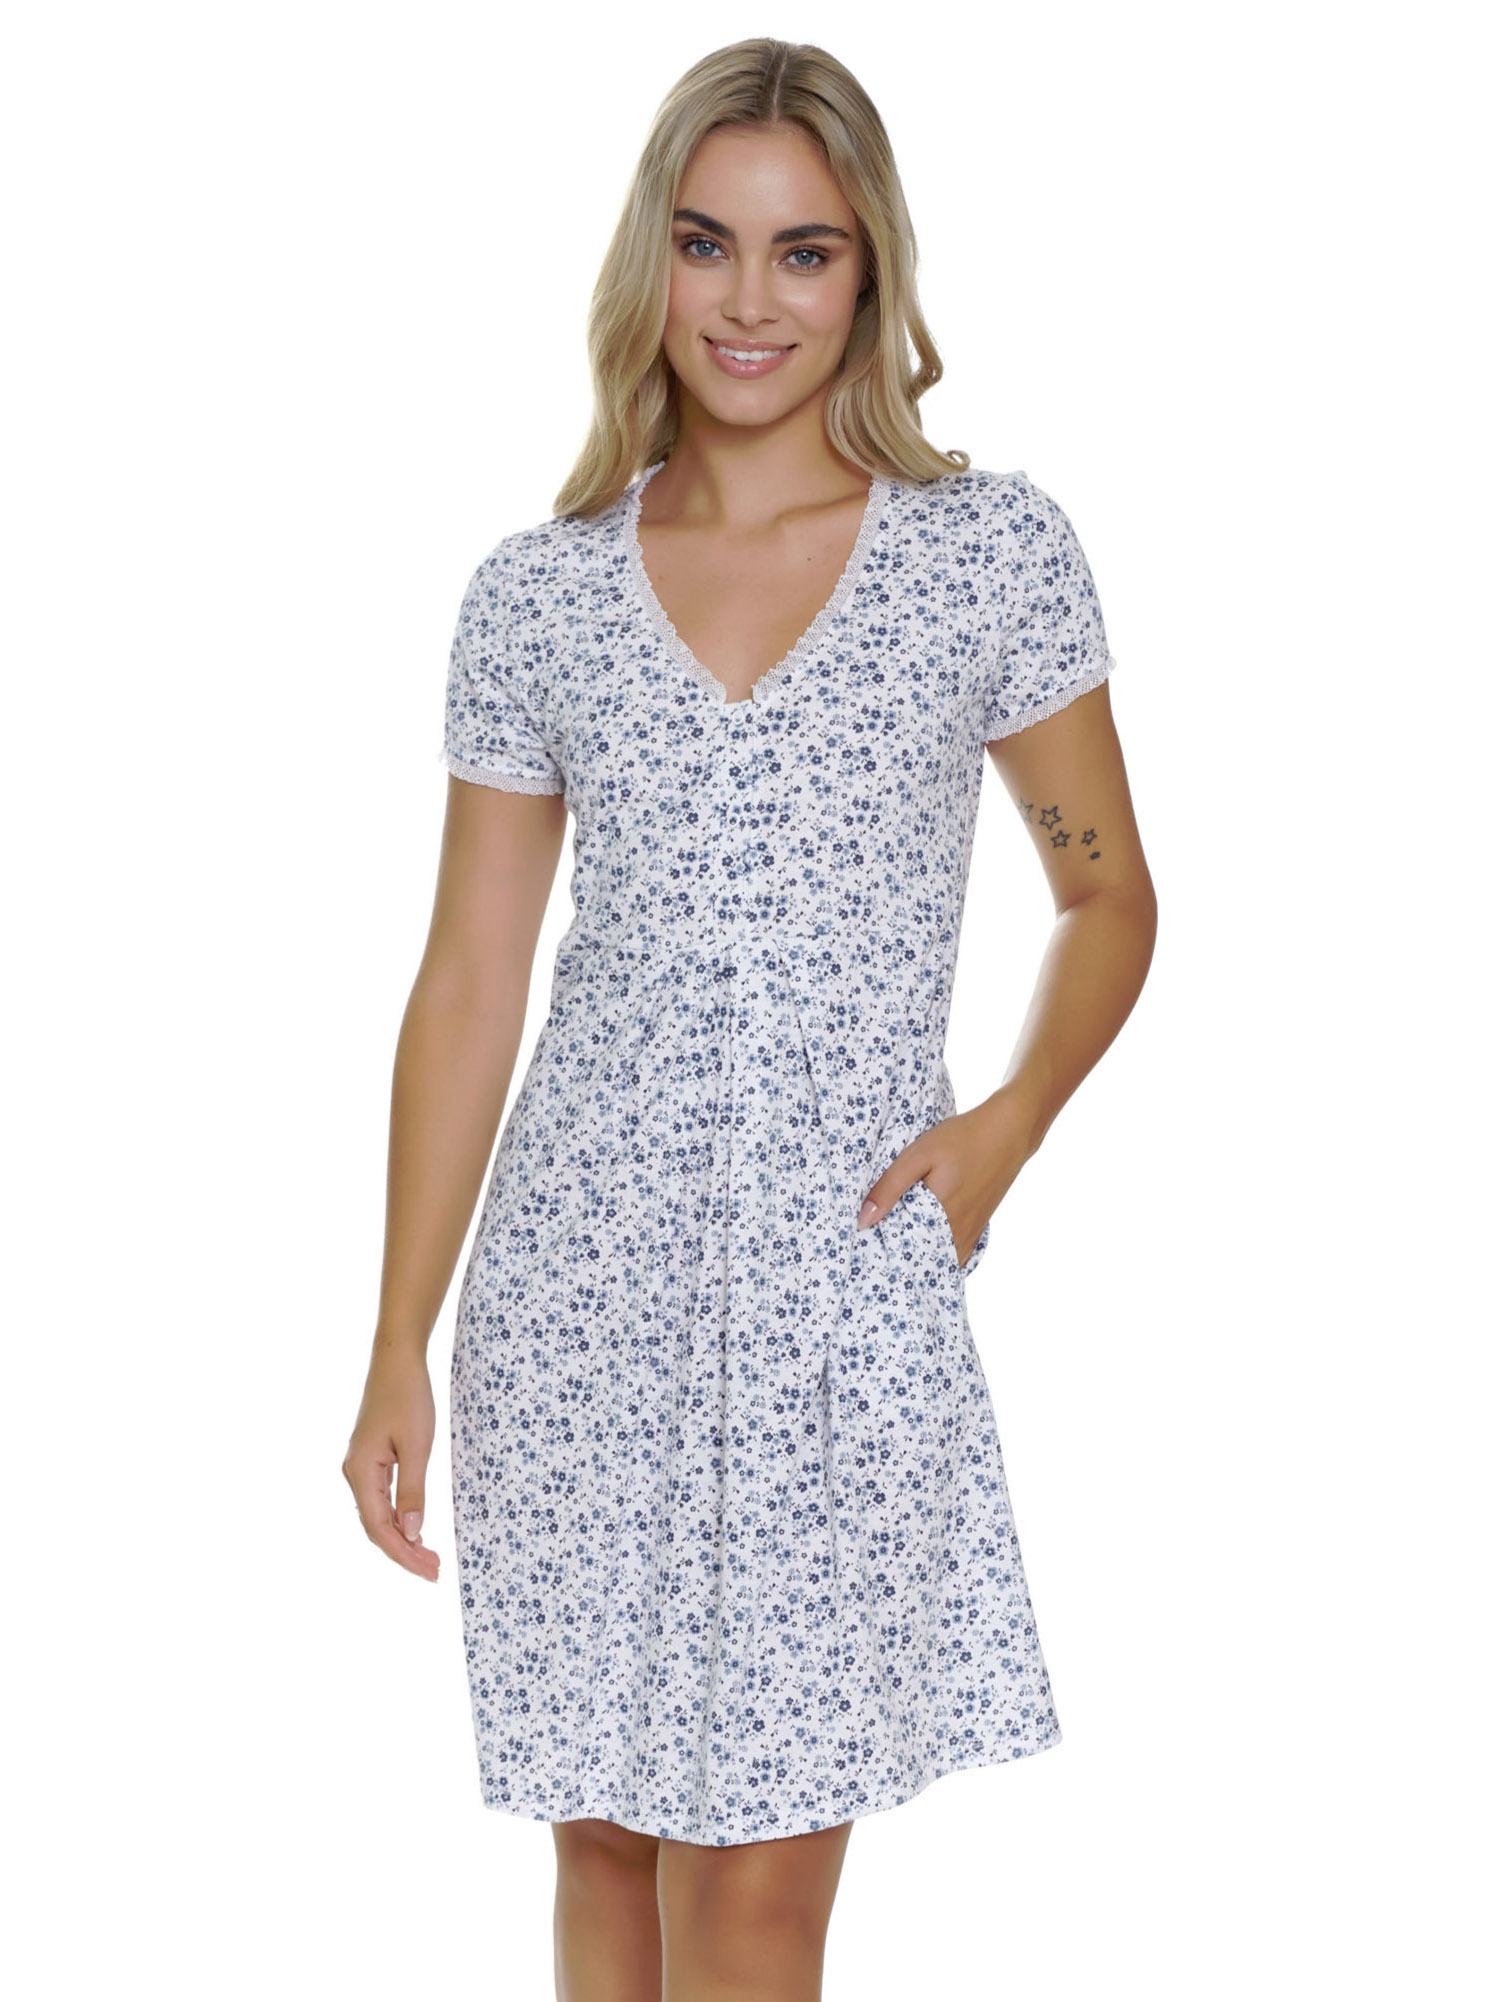 Элегантная женская ночная рубашка с карманами / домашнее платье длиной до середины колена с цветочным узором, застёжкой на кнопки и нежным кружевным декором Doctor Nap TCB 5335 #3